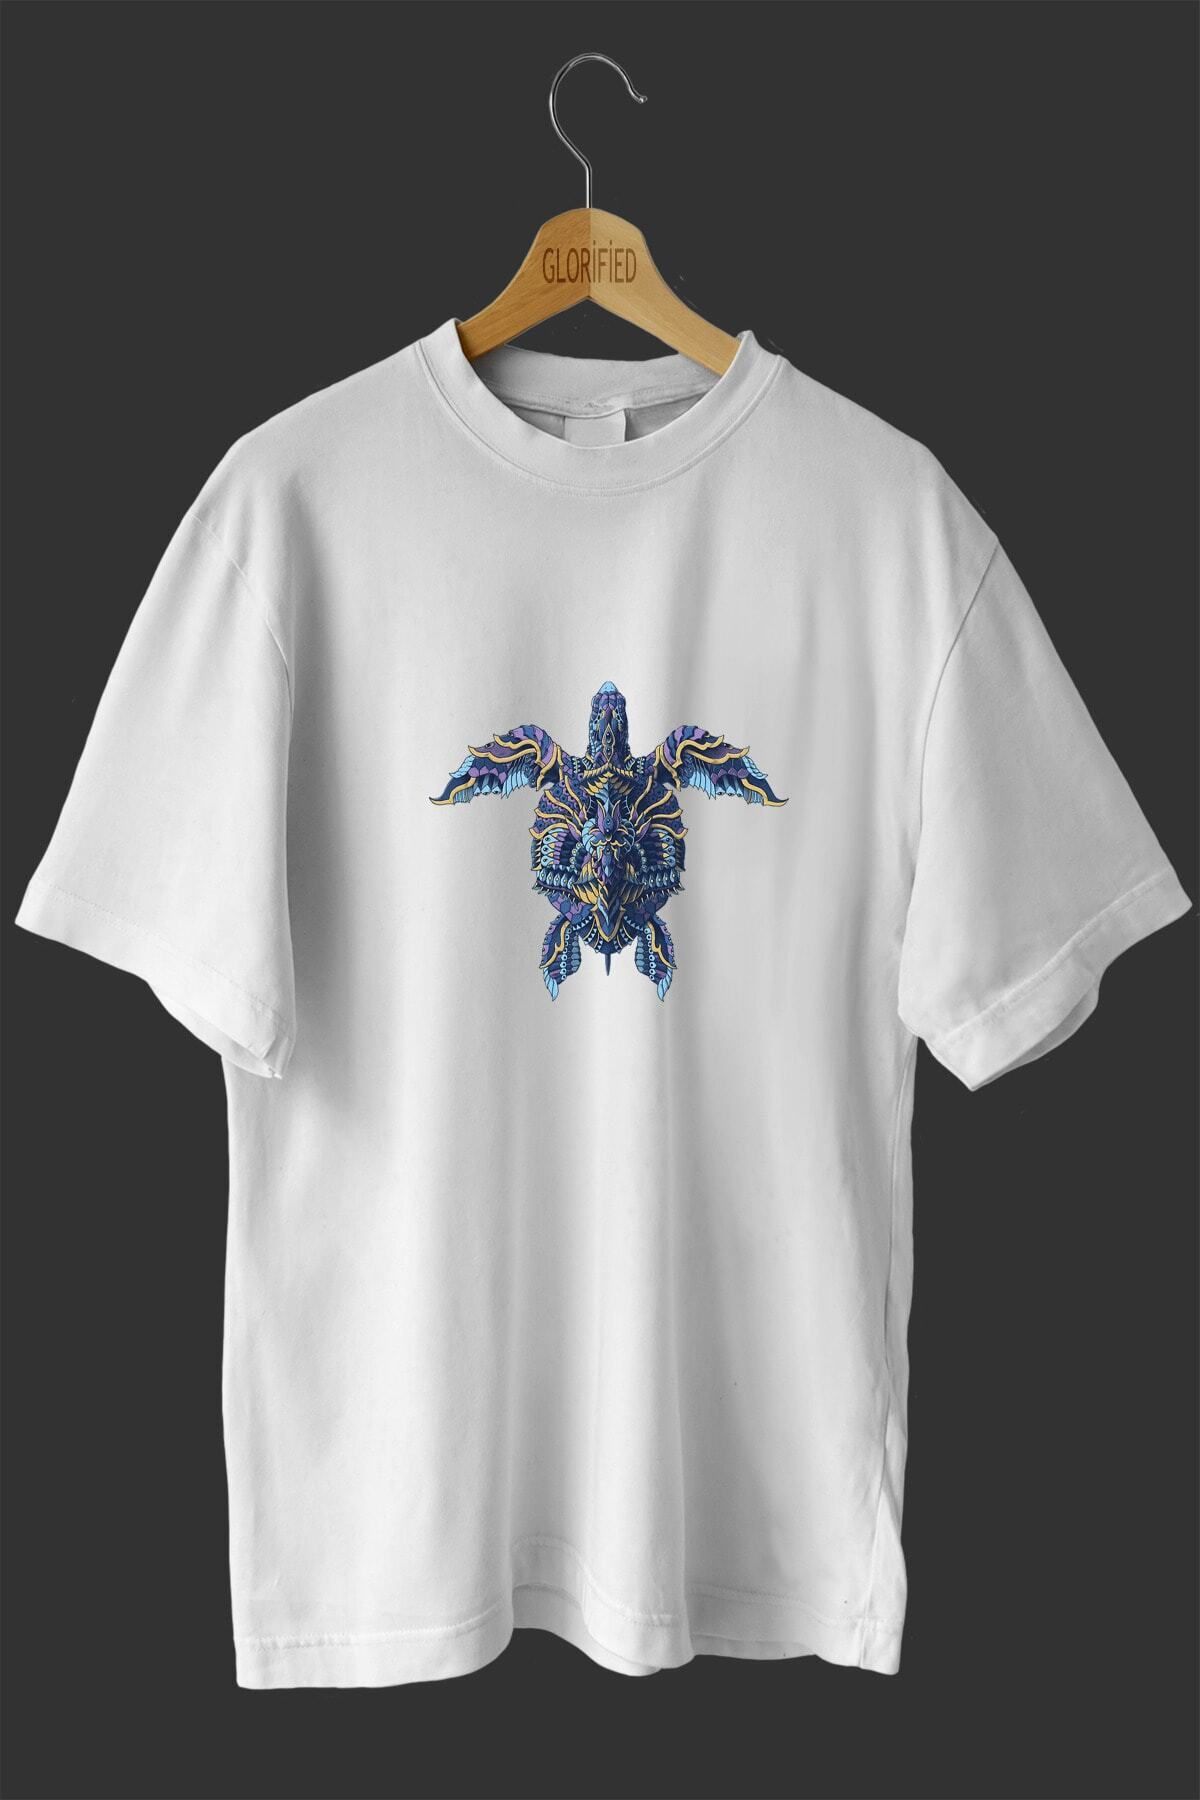 CB MAN COLLECTİON Deniz Kaplumbağası Caretta Caretta Tasarım Baskılı Oversize T-shirt ( Tişört )